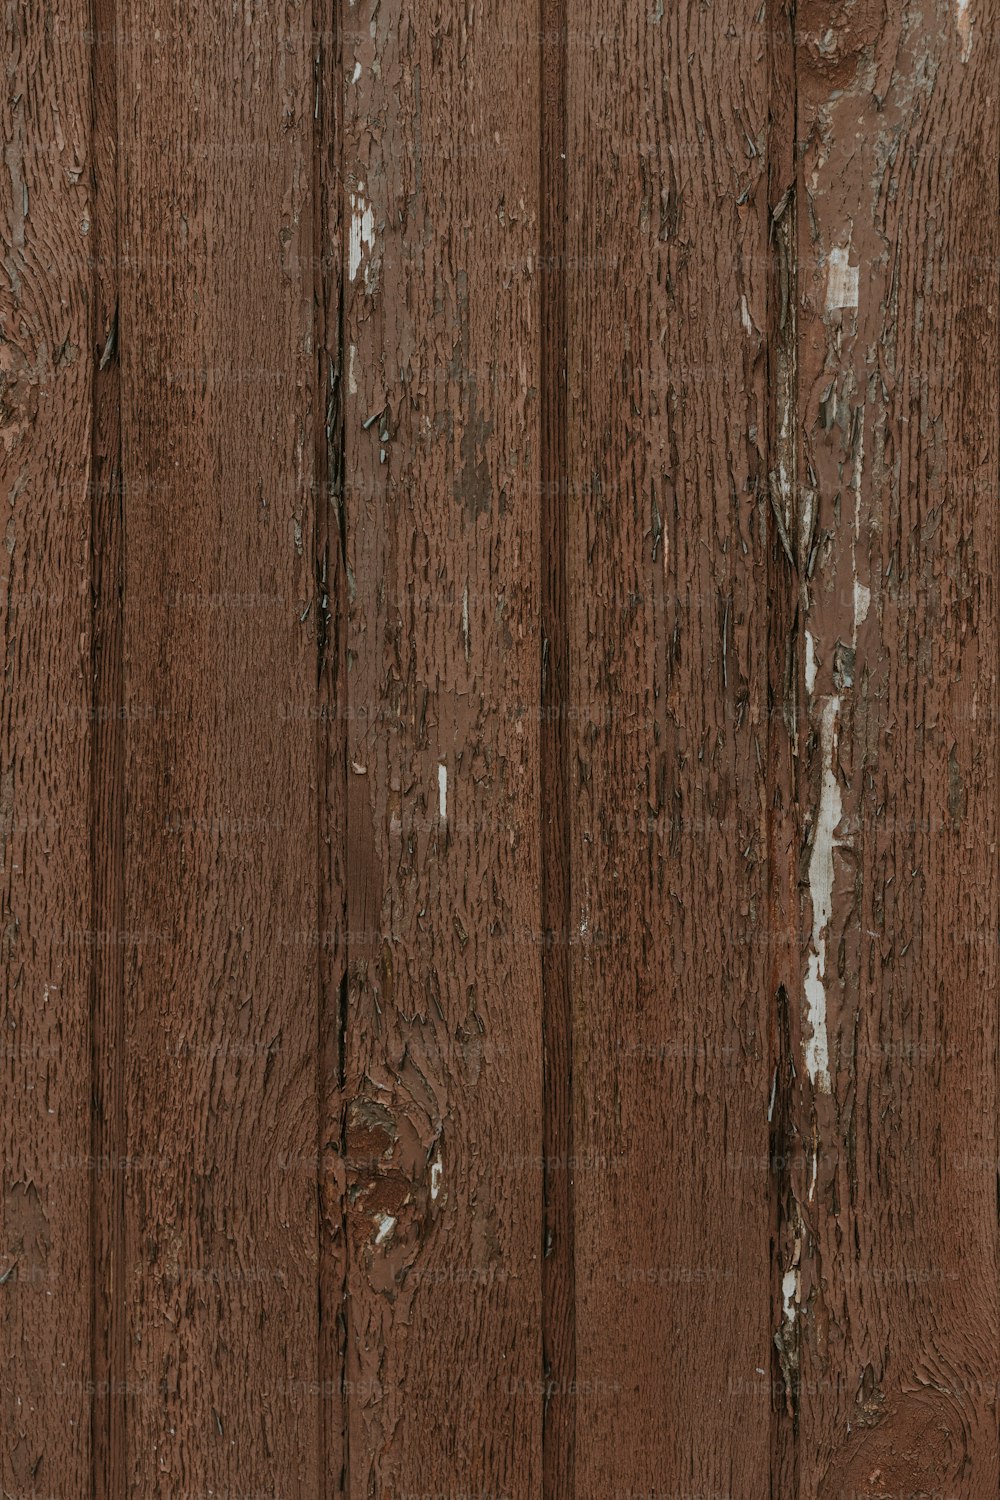 페인트가 벗겨진 갈색 나무 벽